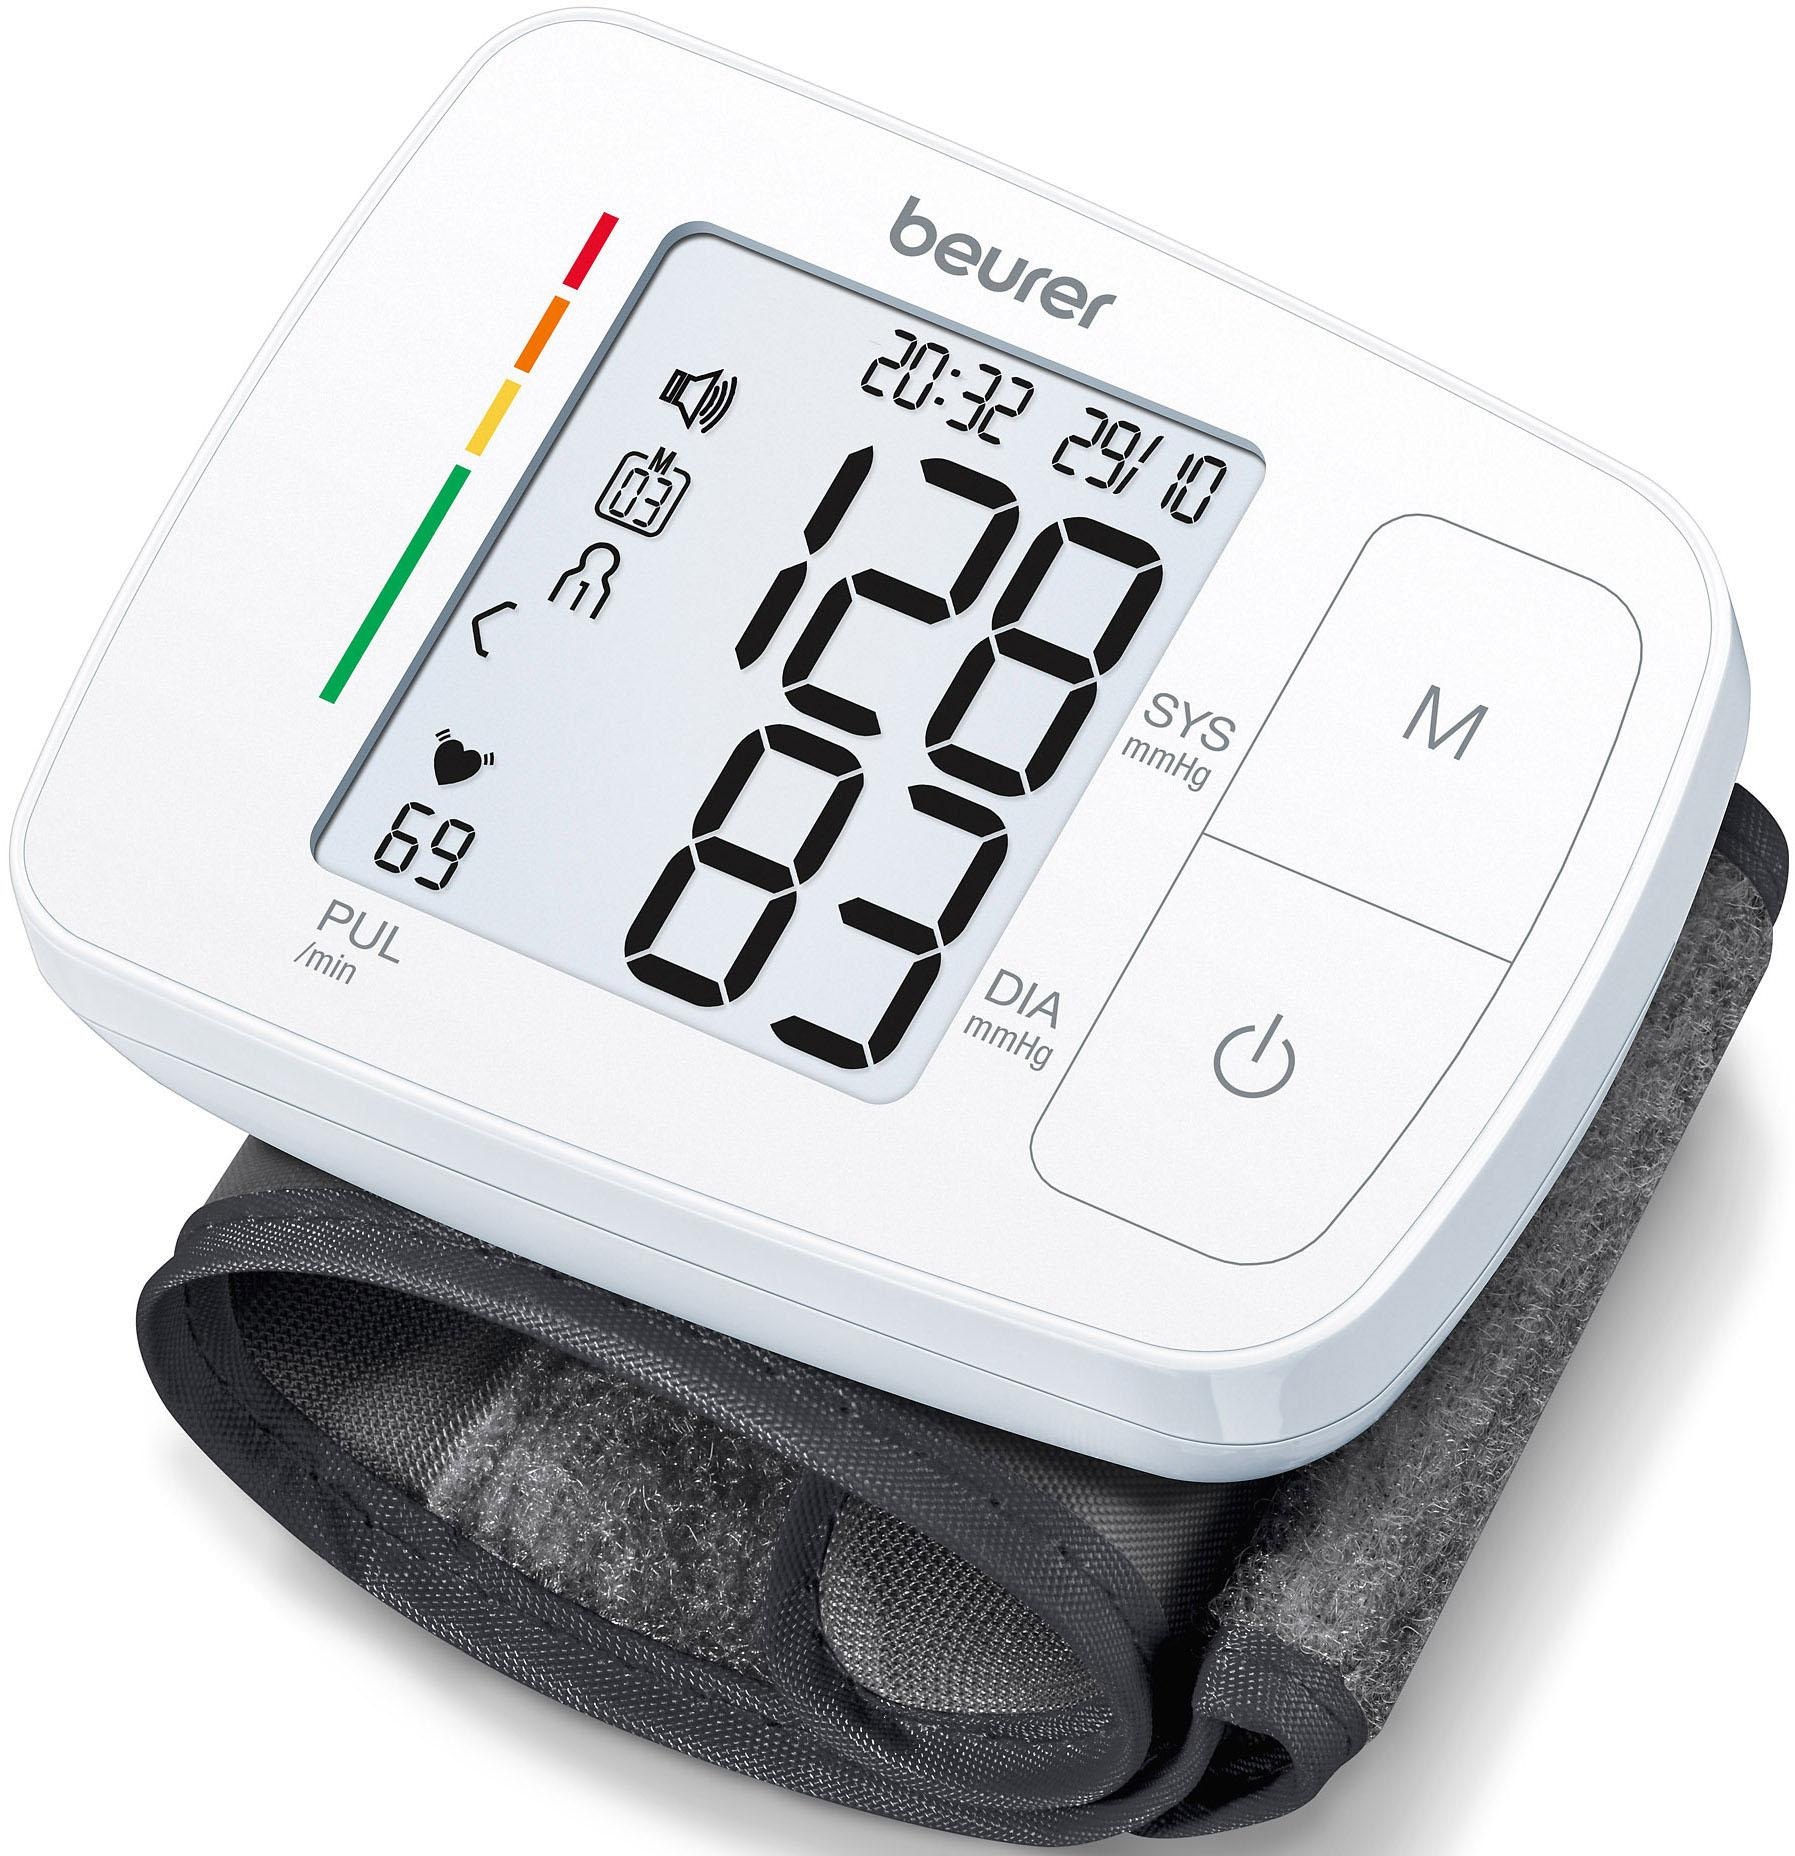 BEURER Handgelenk-Blutdruckmessgerät »BC 21«, mit Sprachausgabe in fünf Sprachen